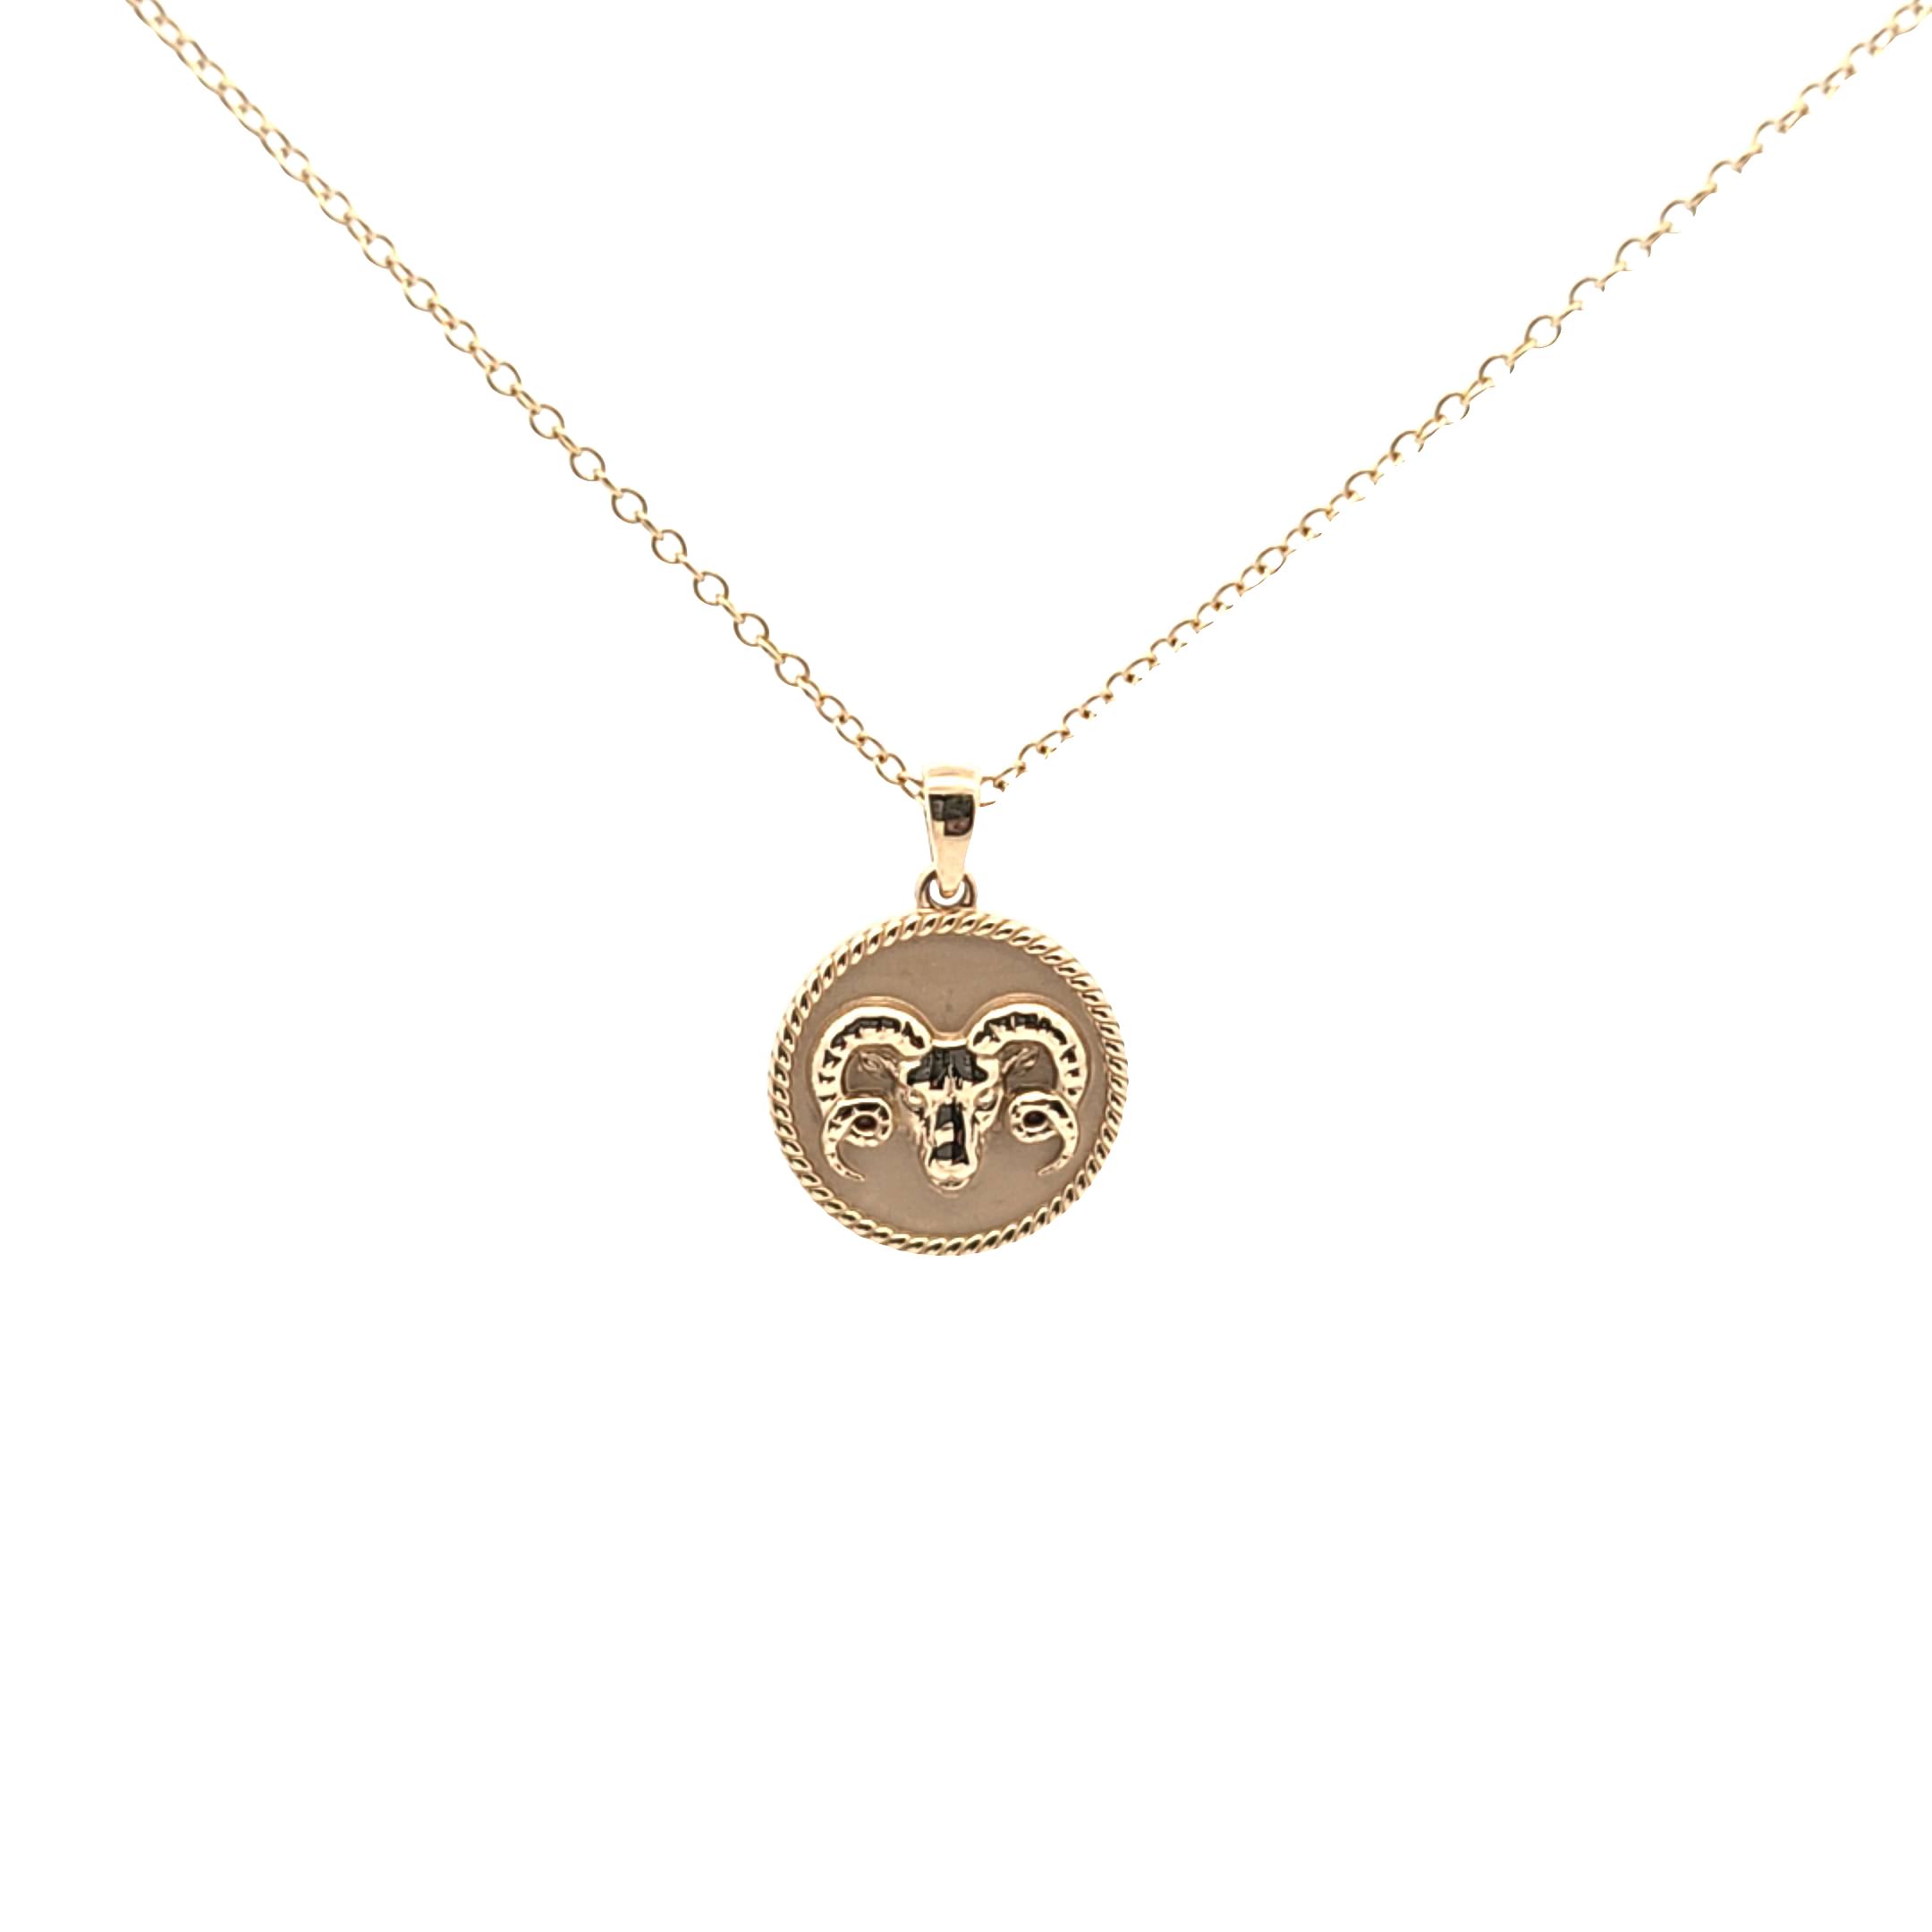 Zodiac Mini Medallion with a chain